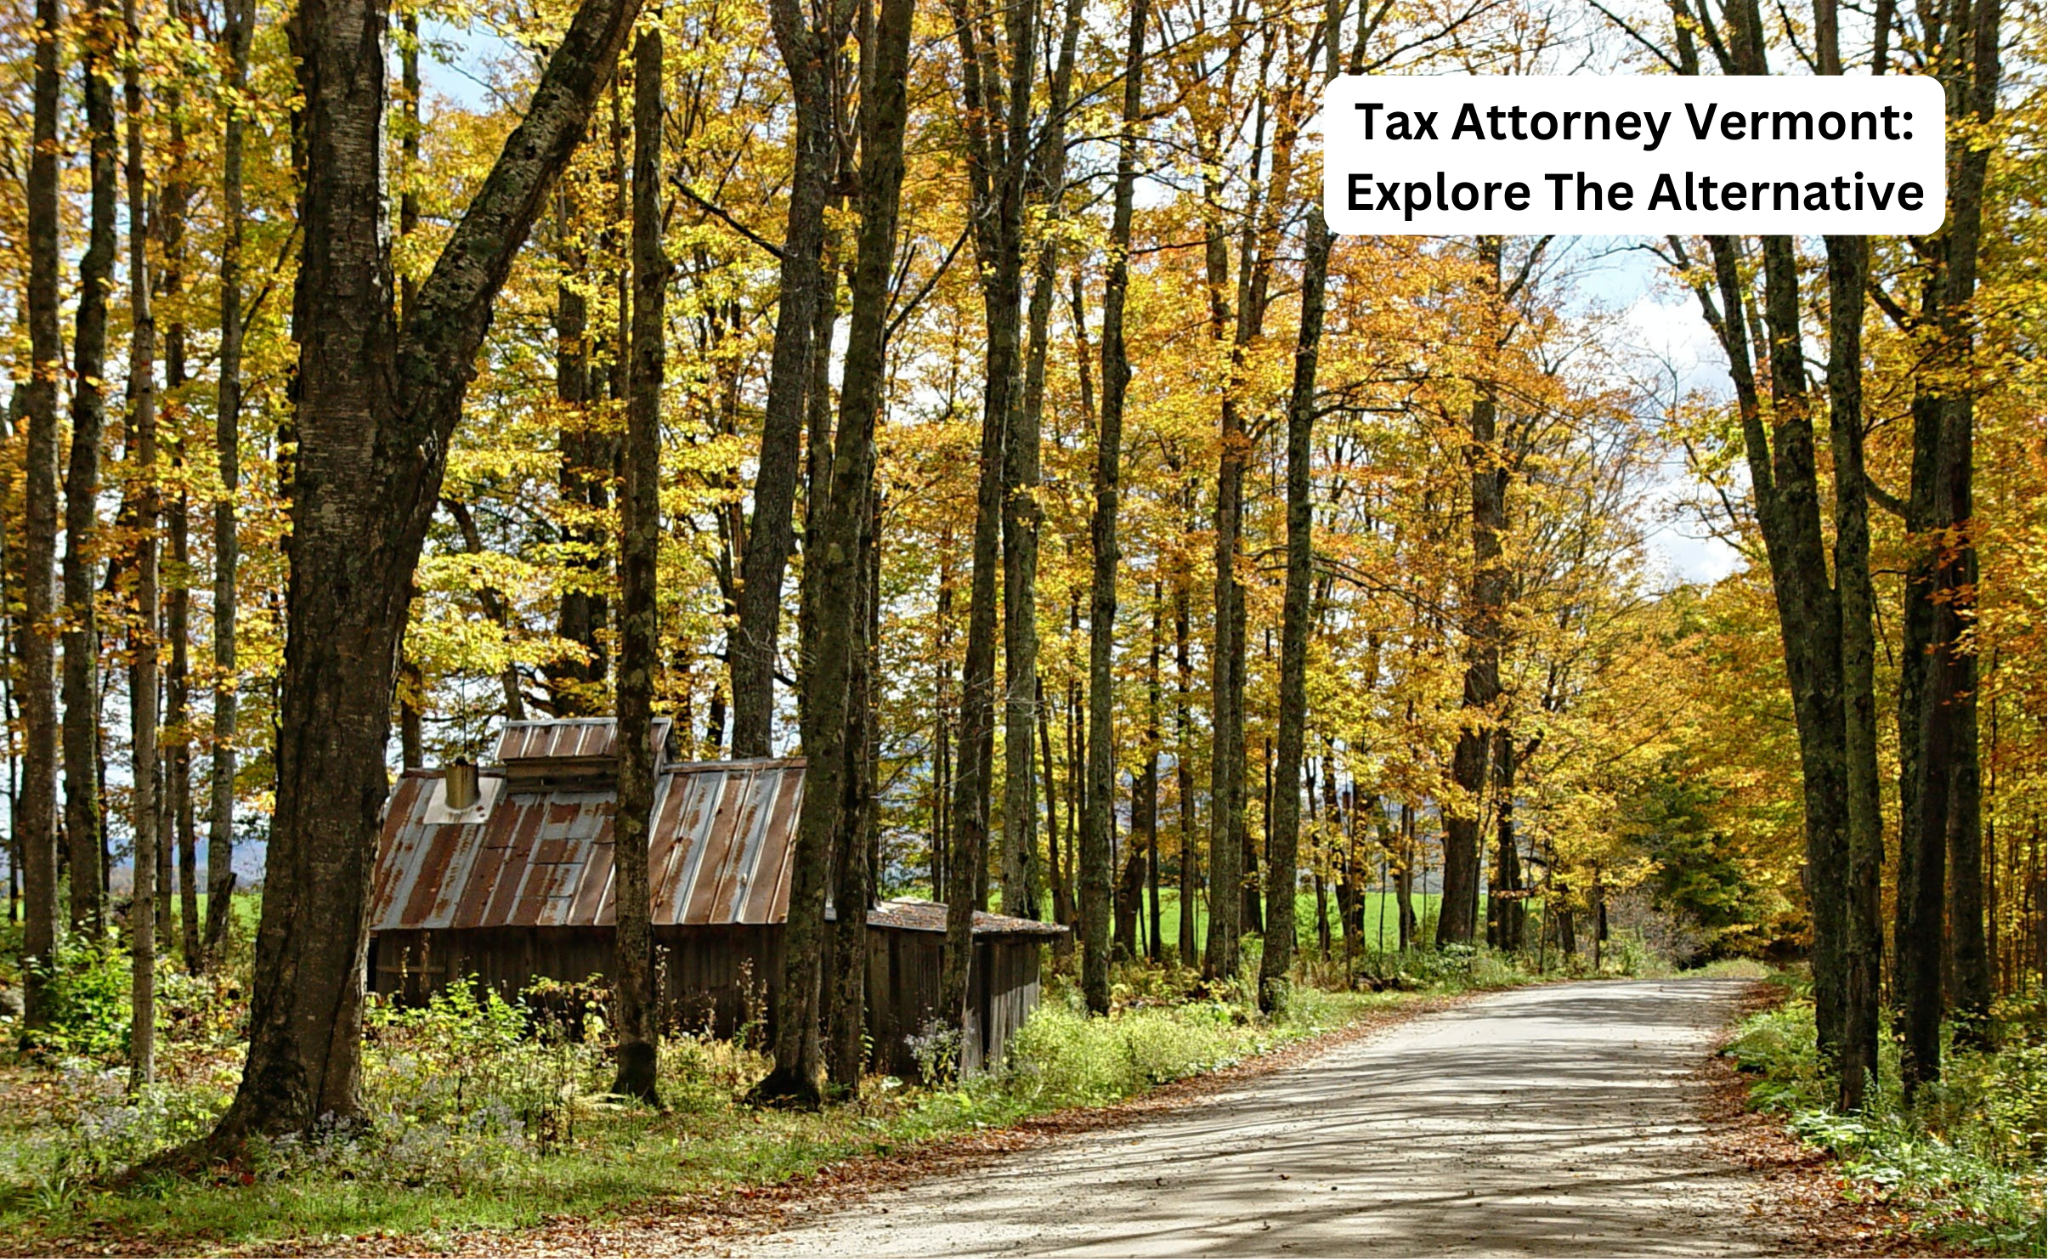 Tax Attorney Vermont: Explore The Alternative